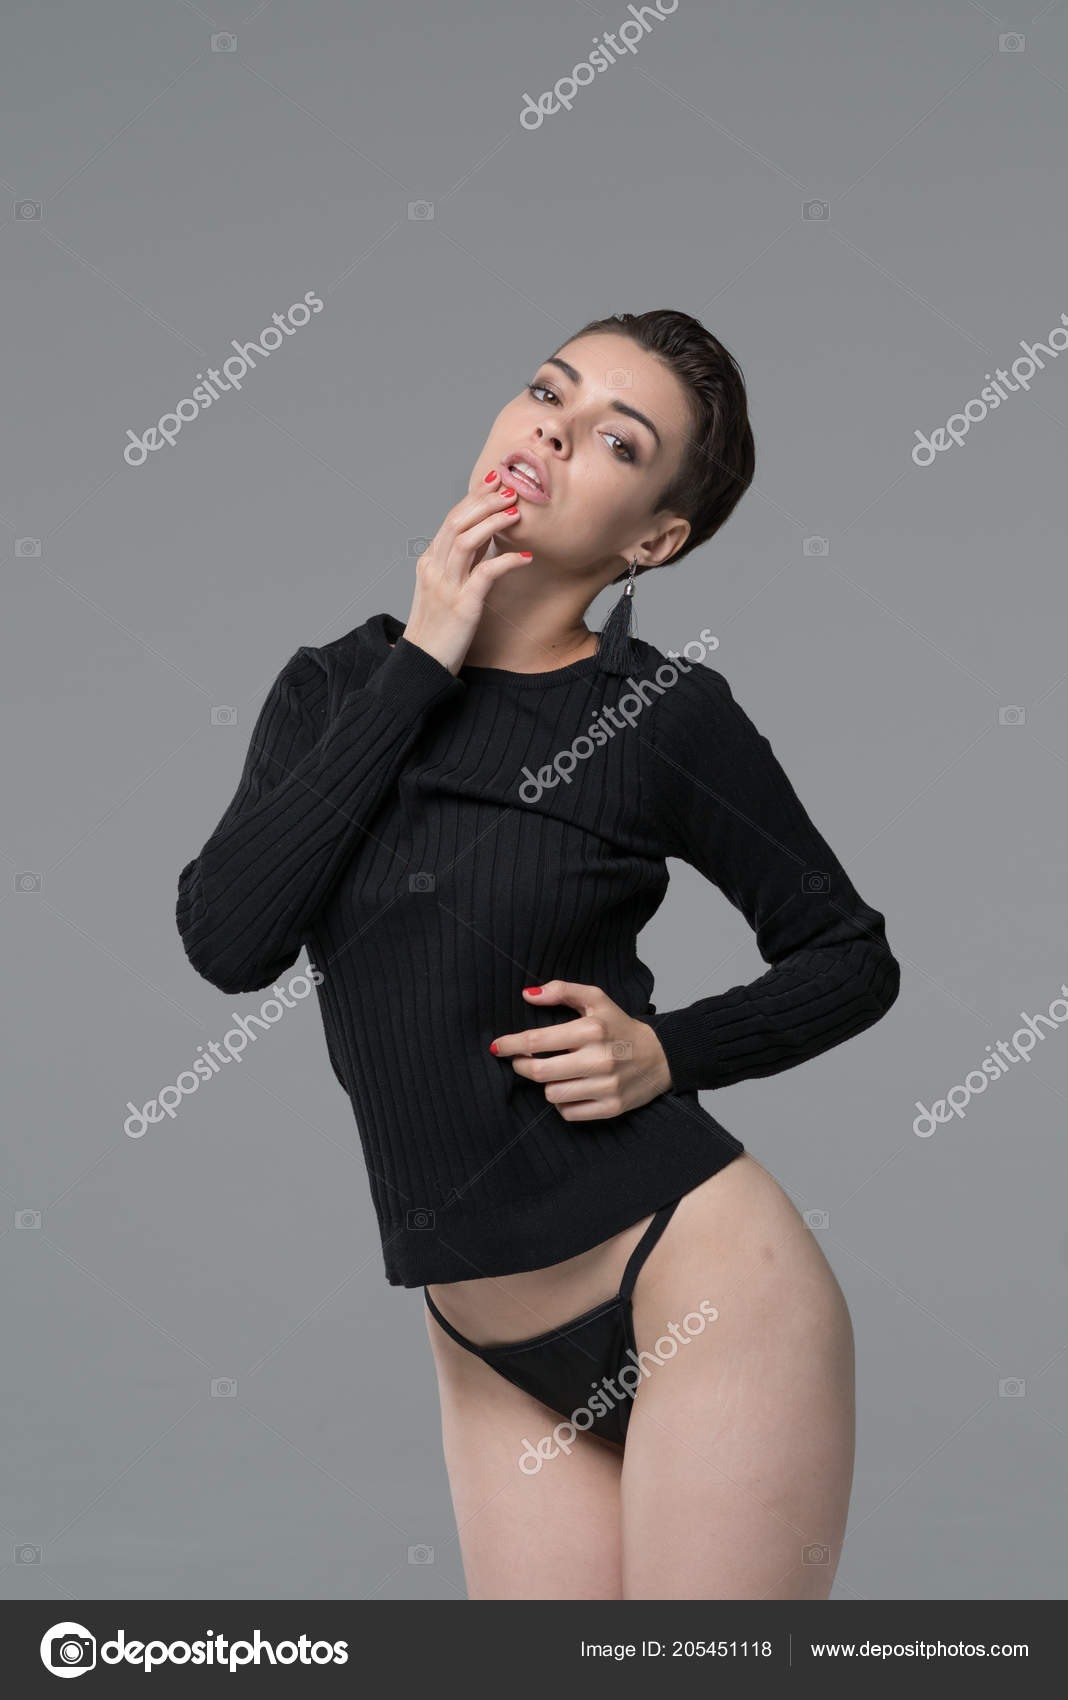 https://st4.depositphotos.com/10086424/20545/i/1600/depositphotos_205451118-stock-photo-young-beautiful-girl-posing-studio.jpg